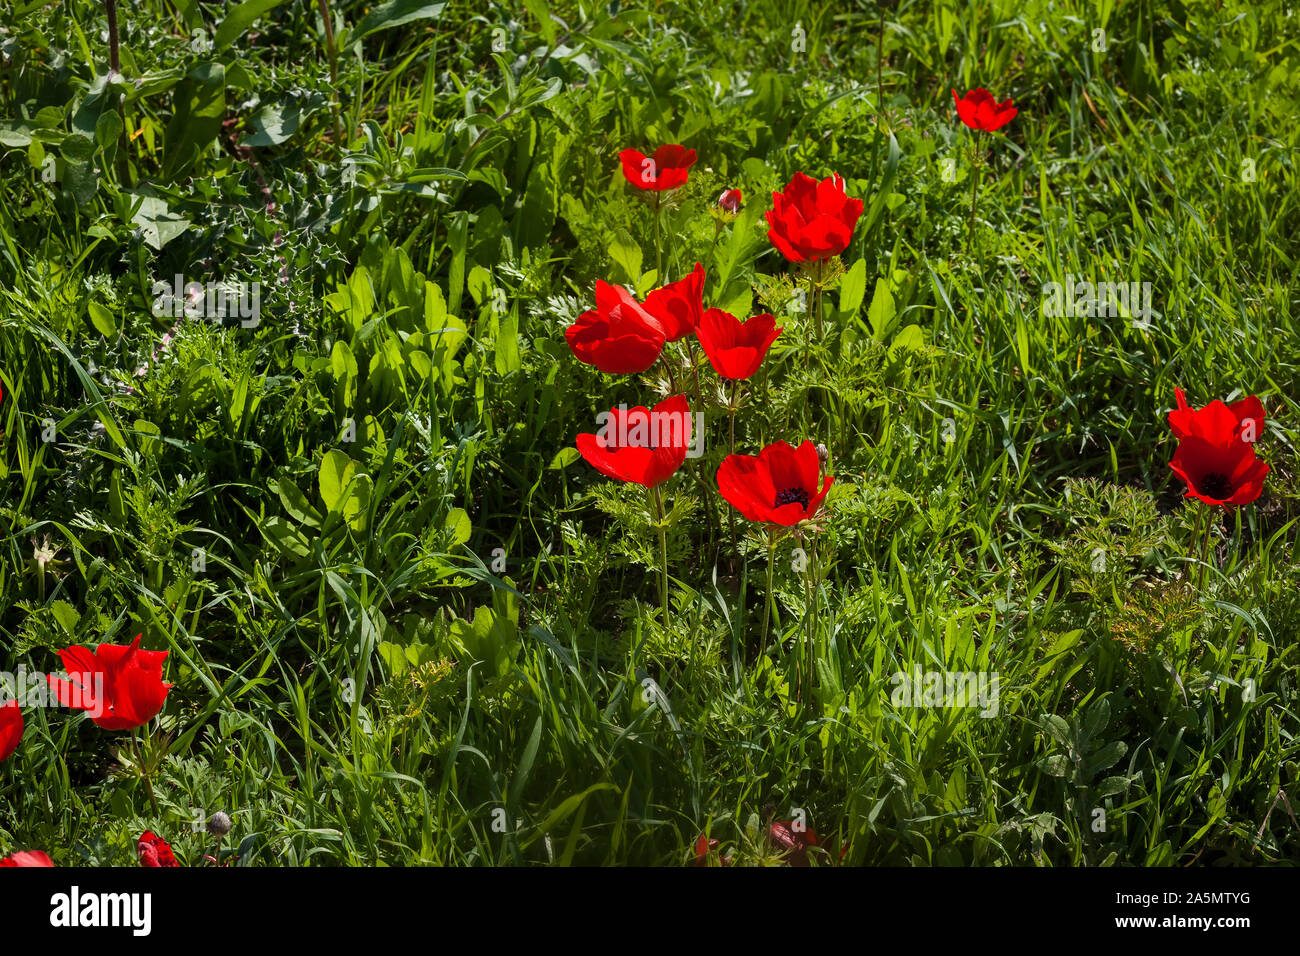 Nahaufnahme auf glänzende rote Anemone Blumen im Feld unter grünen Gras Stockfoto